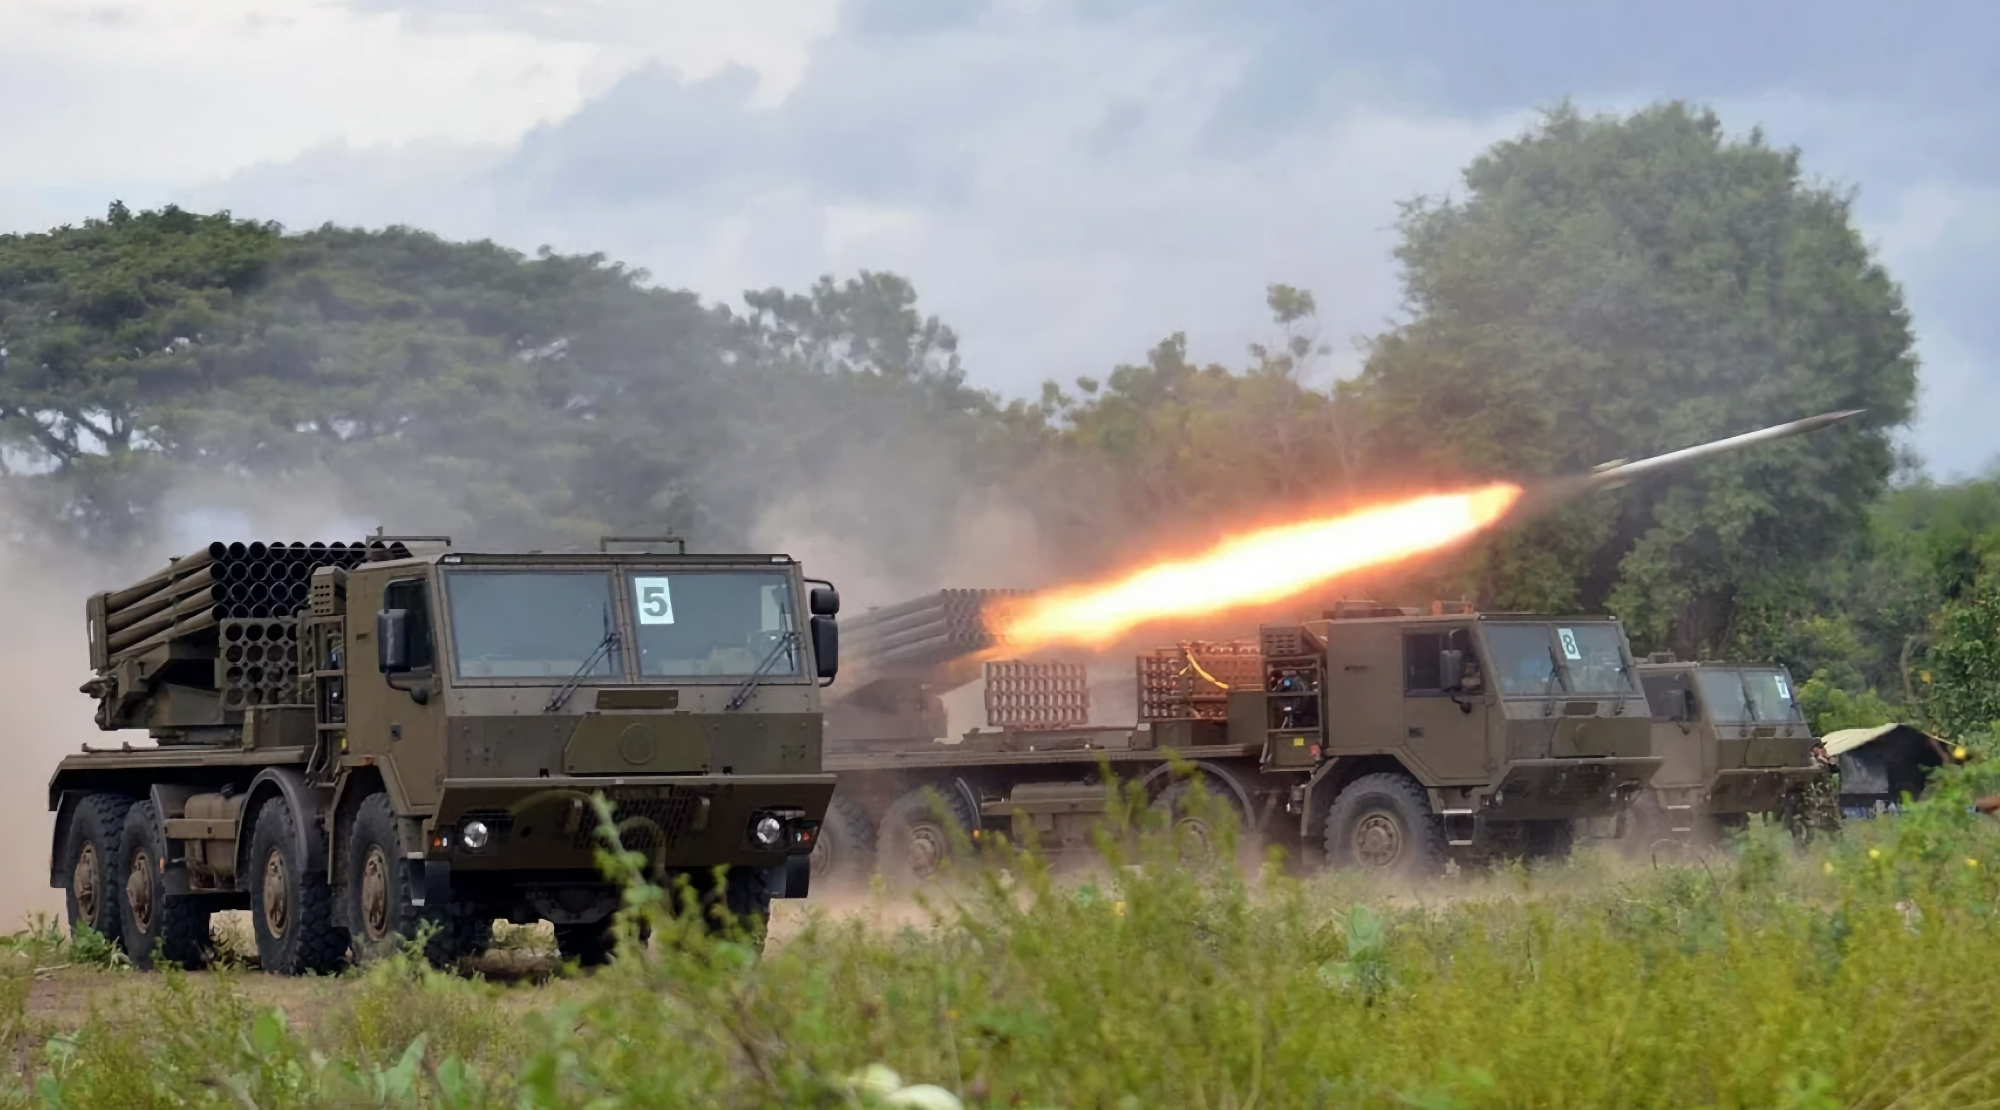 Tschechische Freiwillige sammeln 2.300.000 $ für die AFU zum Kauf eines RM-70 Mehrfachraketenwerfers und 365 Raketen